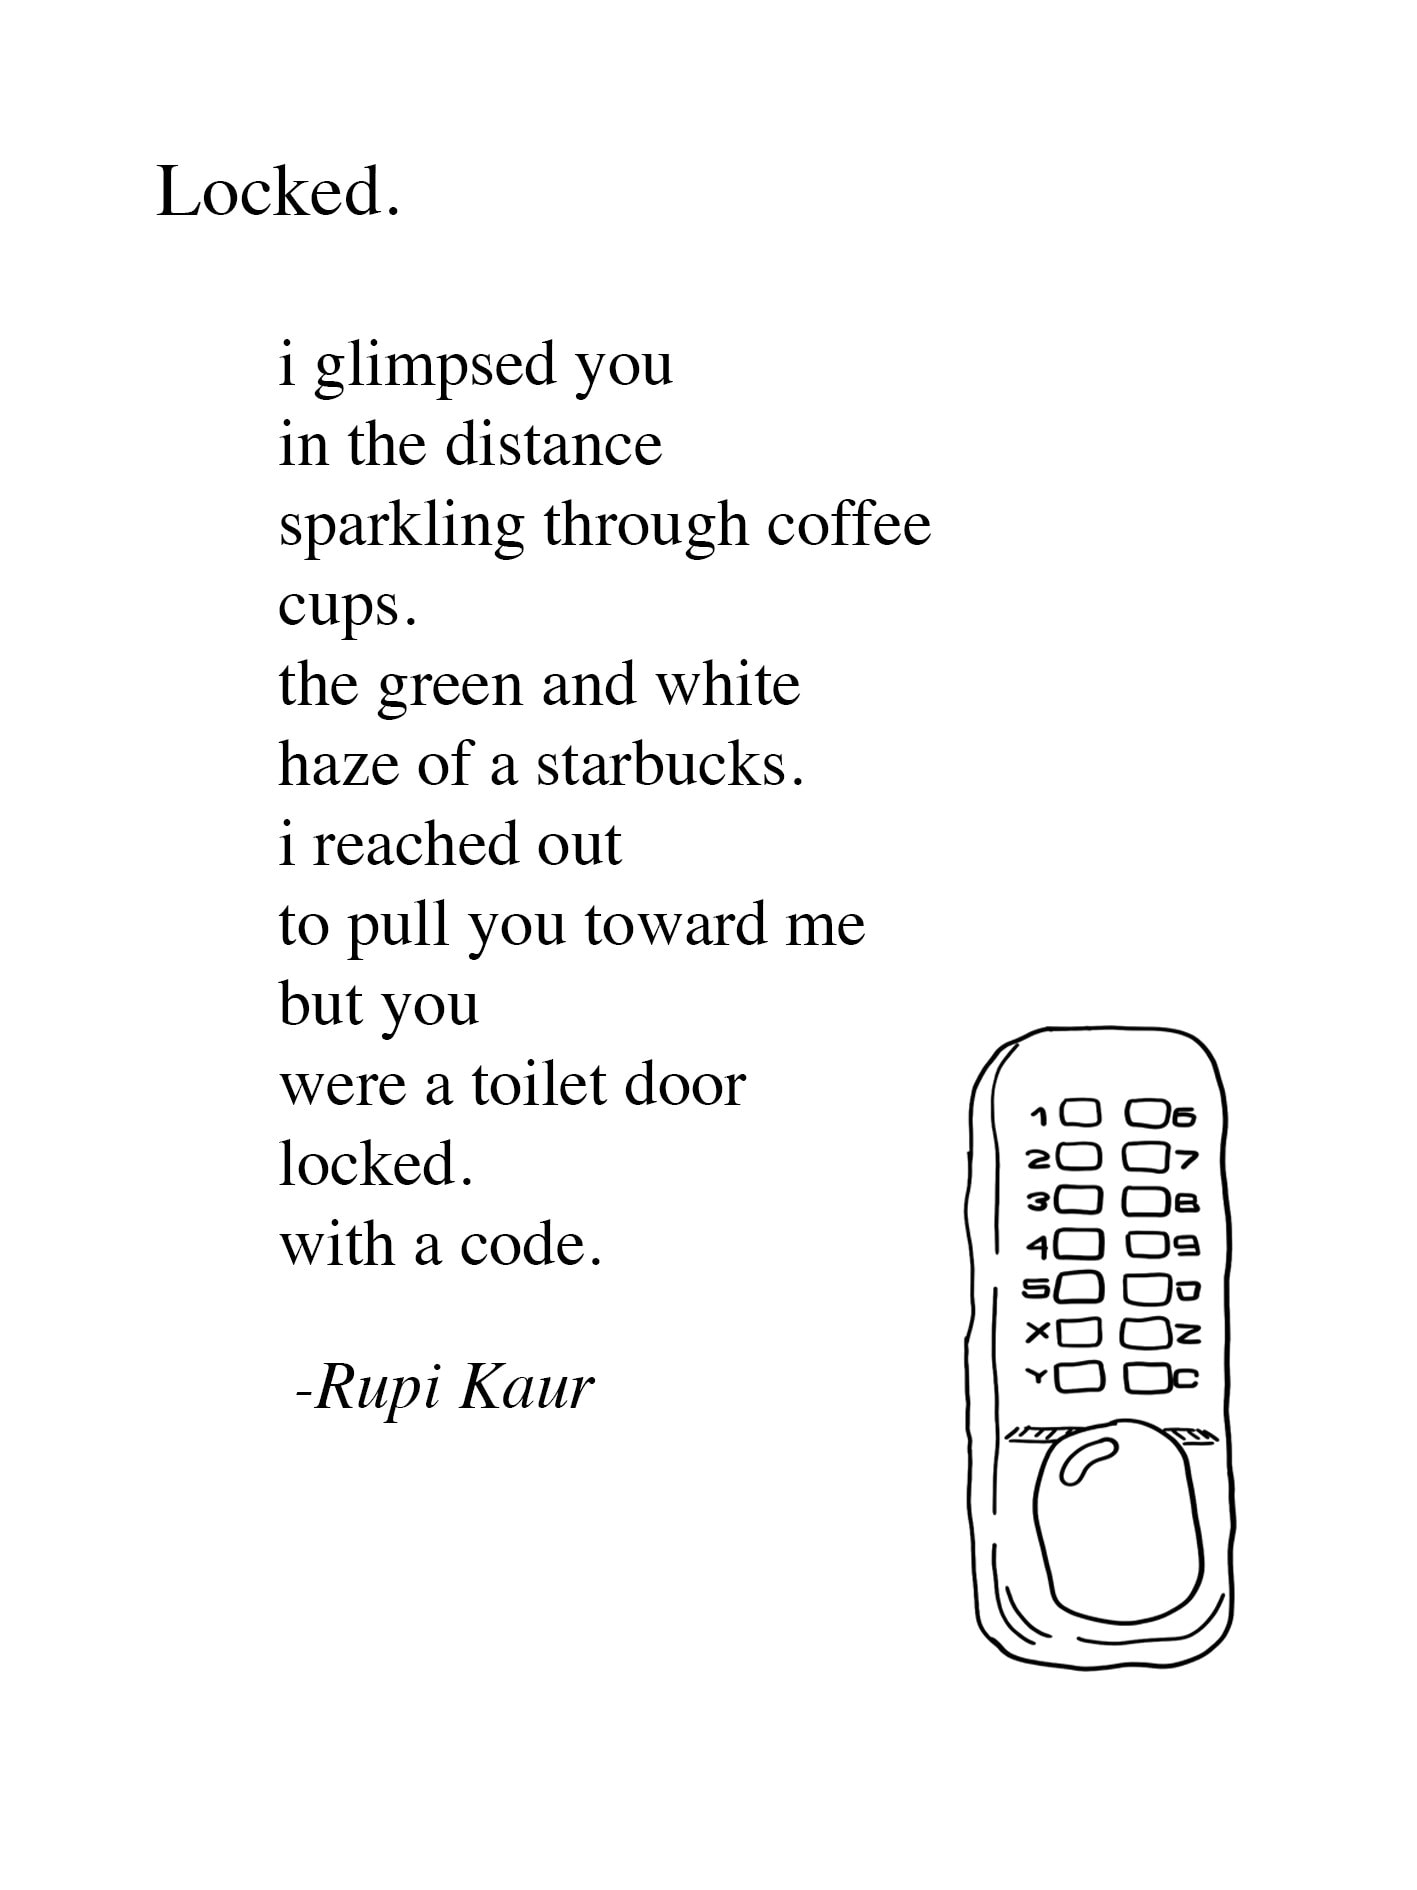 écrivez un poème rupi kaur sur un sujet de votre choix